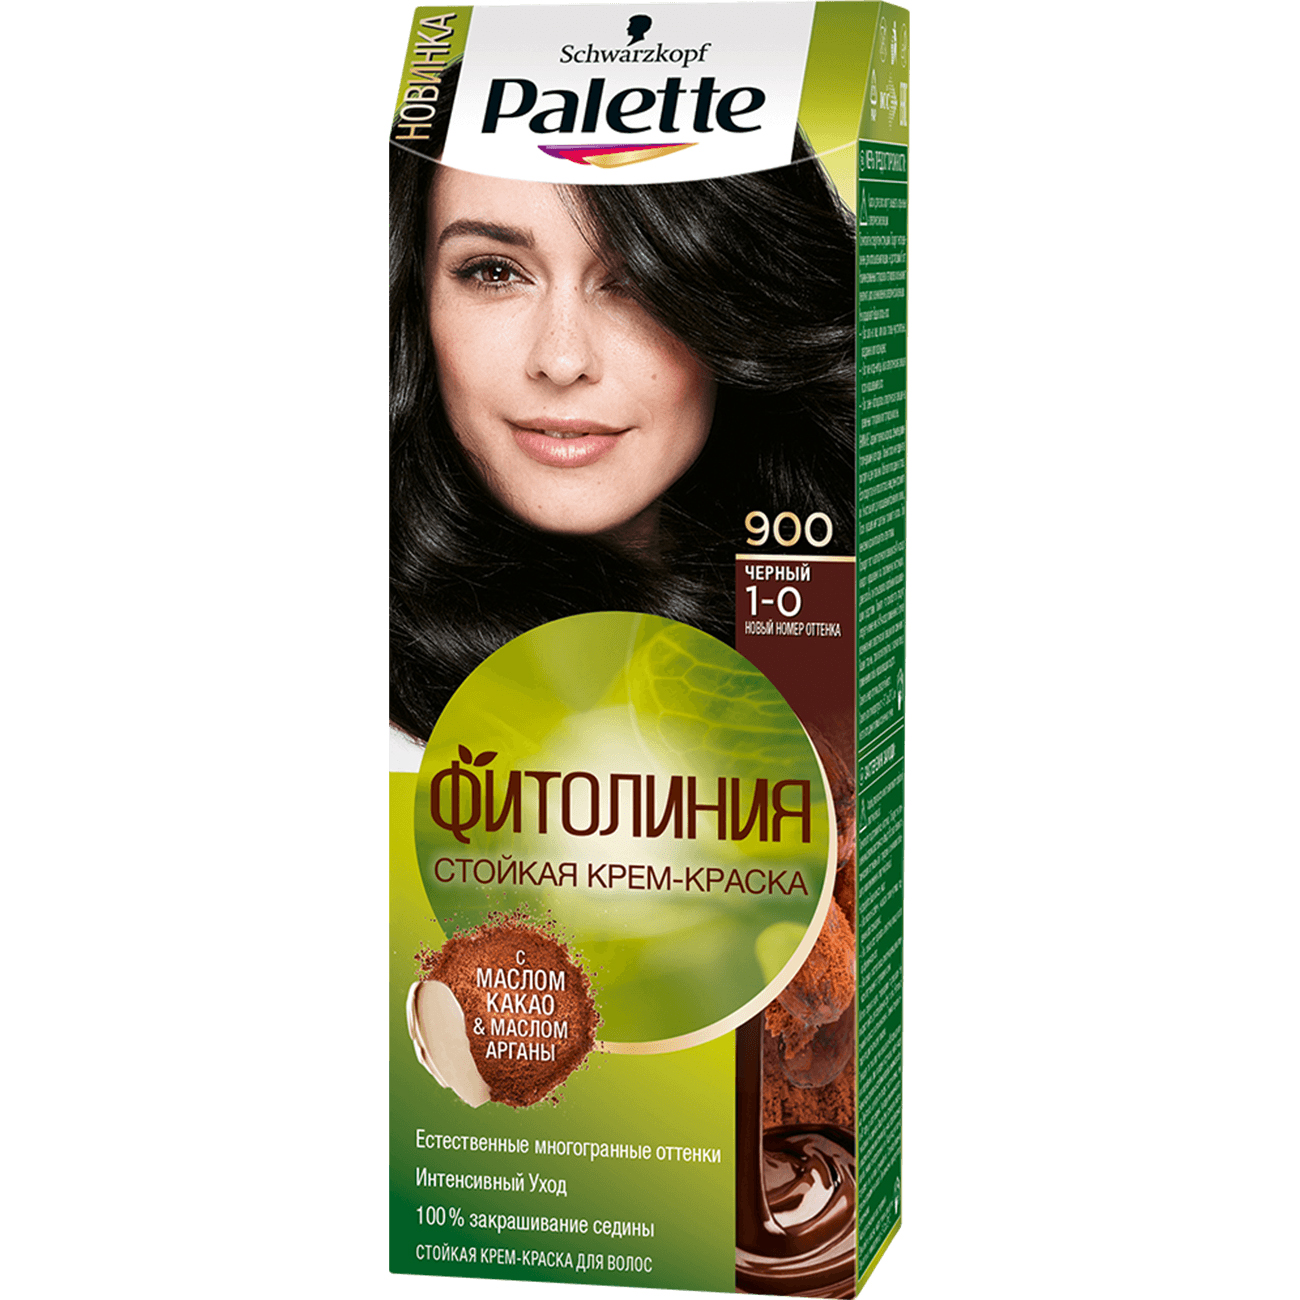 Крем-краска для волос Palette Фитолиния 1-0, 900 Черный 110 мл стойкая крем краска для волос тон светло русый 115 мл